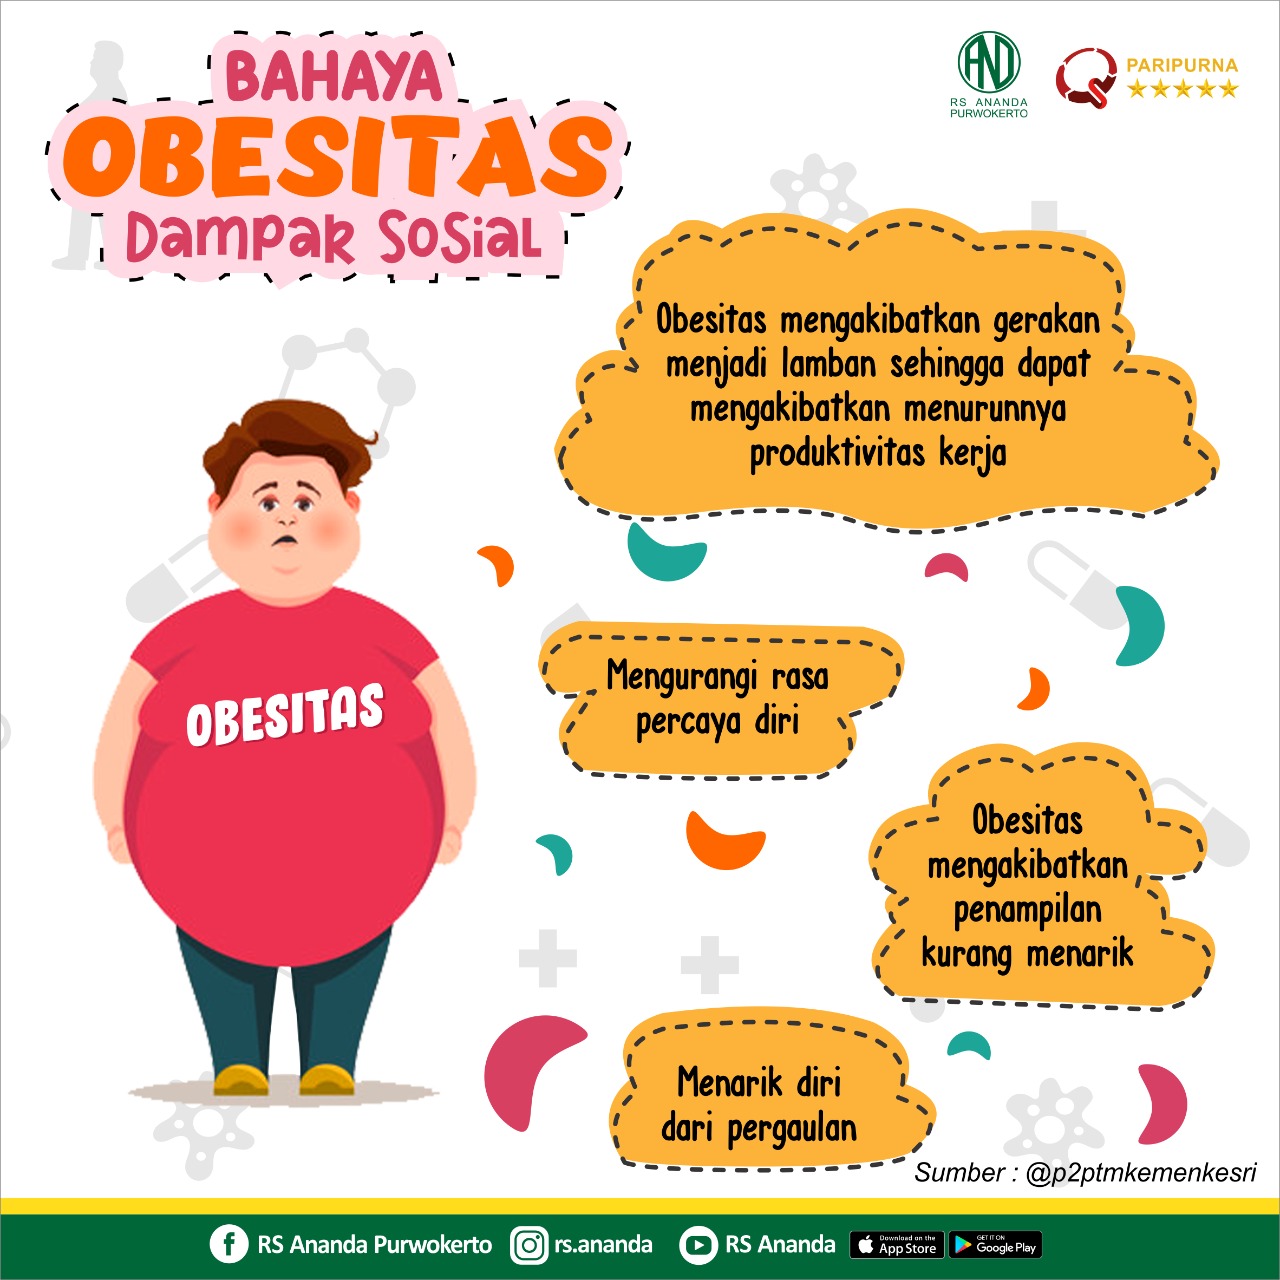 bahaya obesitas bagi dampak sosial BAHAYA OBESITAS BAGI DAMPAK SOSIAL WhatsApp Image 2019 09 22 at 21